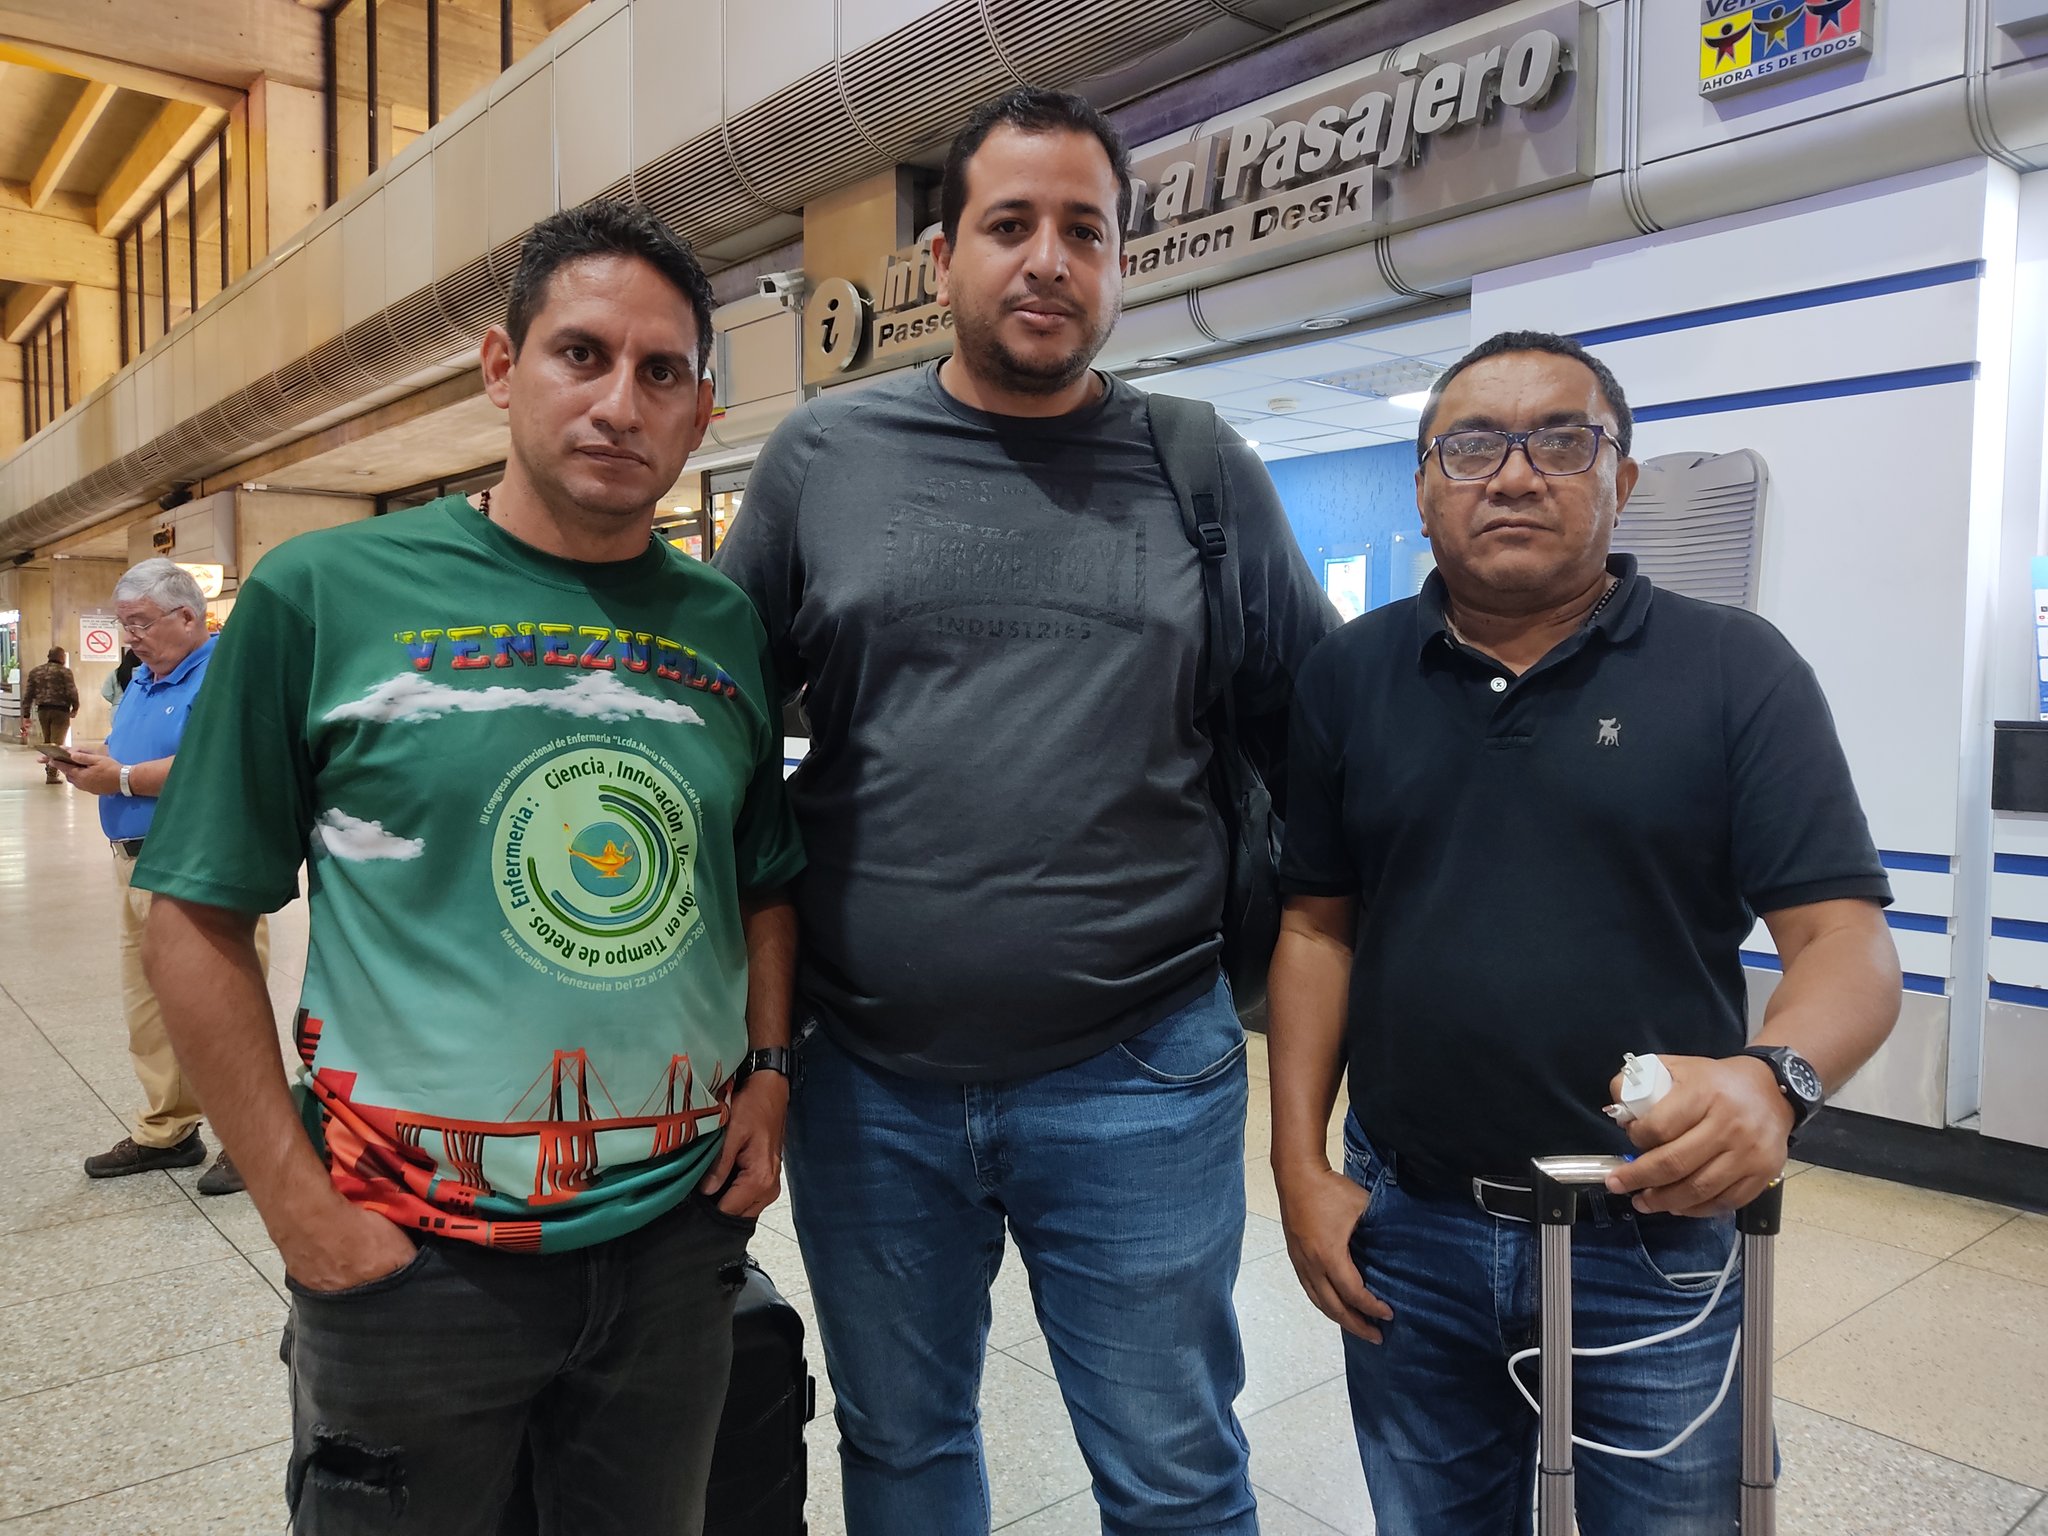 Sntp confirma liberación de sindicalistas Mauro Zambrano, Julio García y Nelson López tras 24 horas de detención